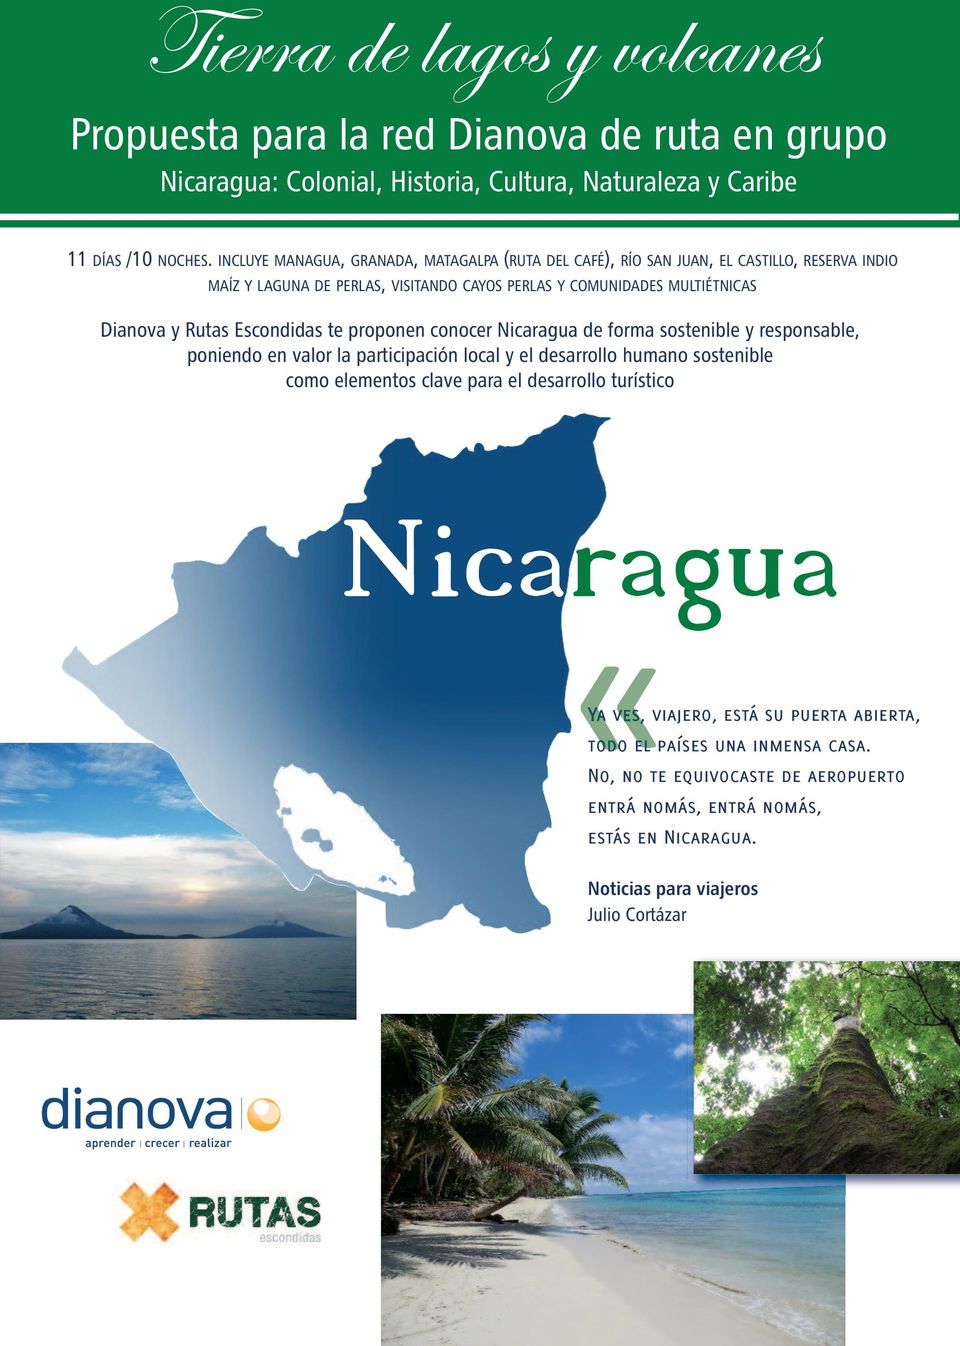 Escondidas te proponen conocer Nicaragua de forma sostenible y responsable, poniendo en valor la participación local y el desarrollo humano sostenible como elementos clave para el